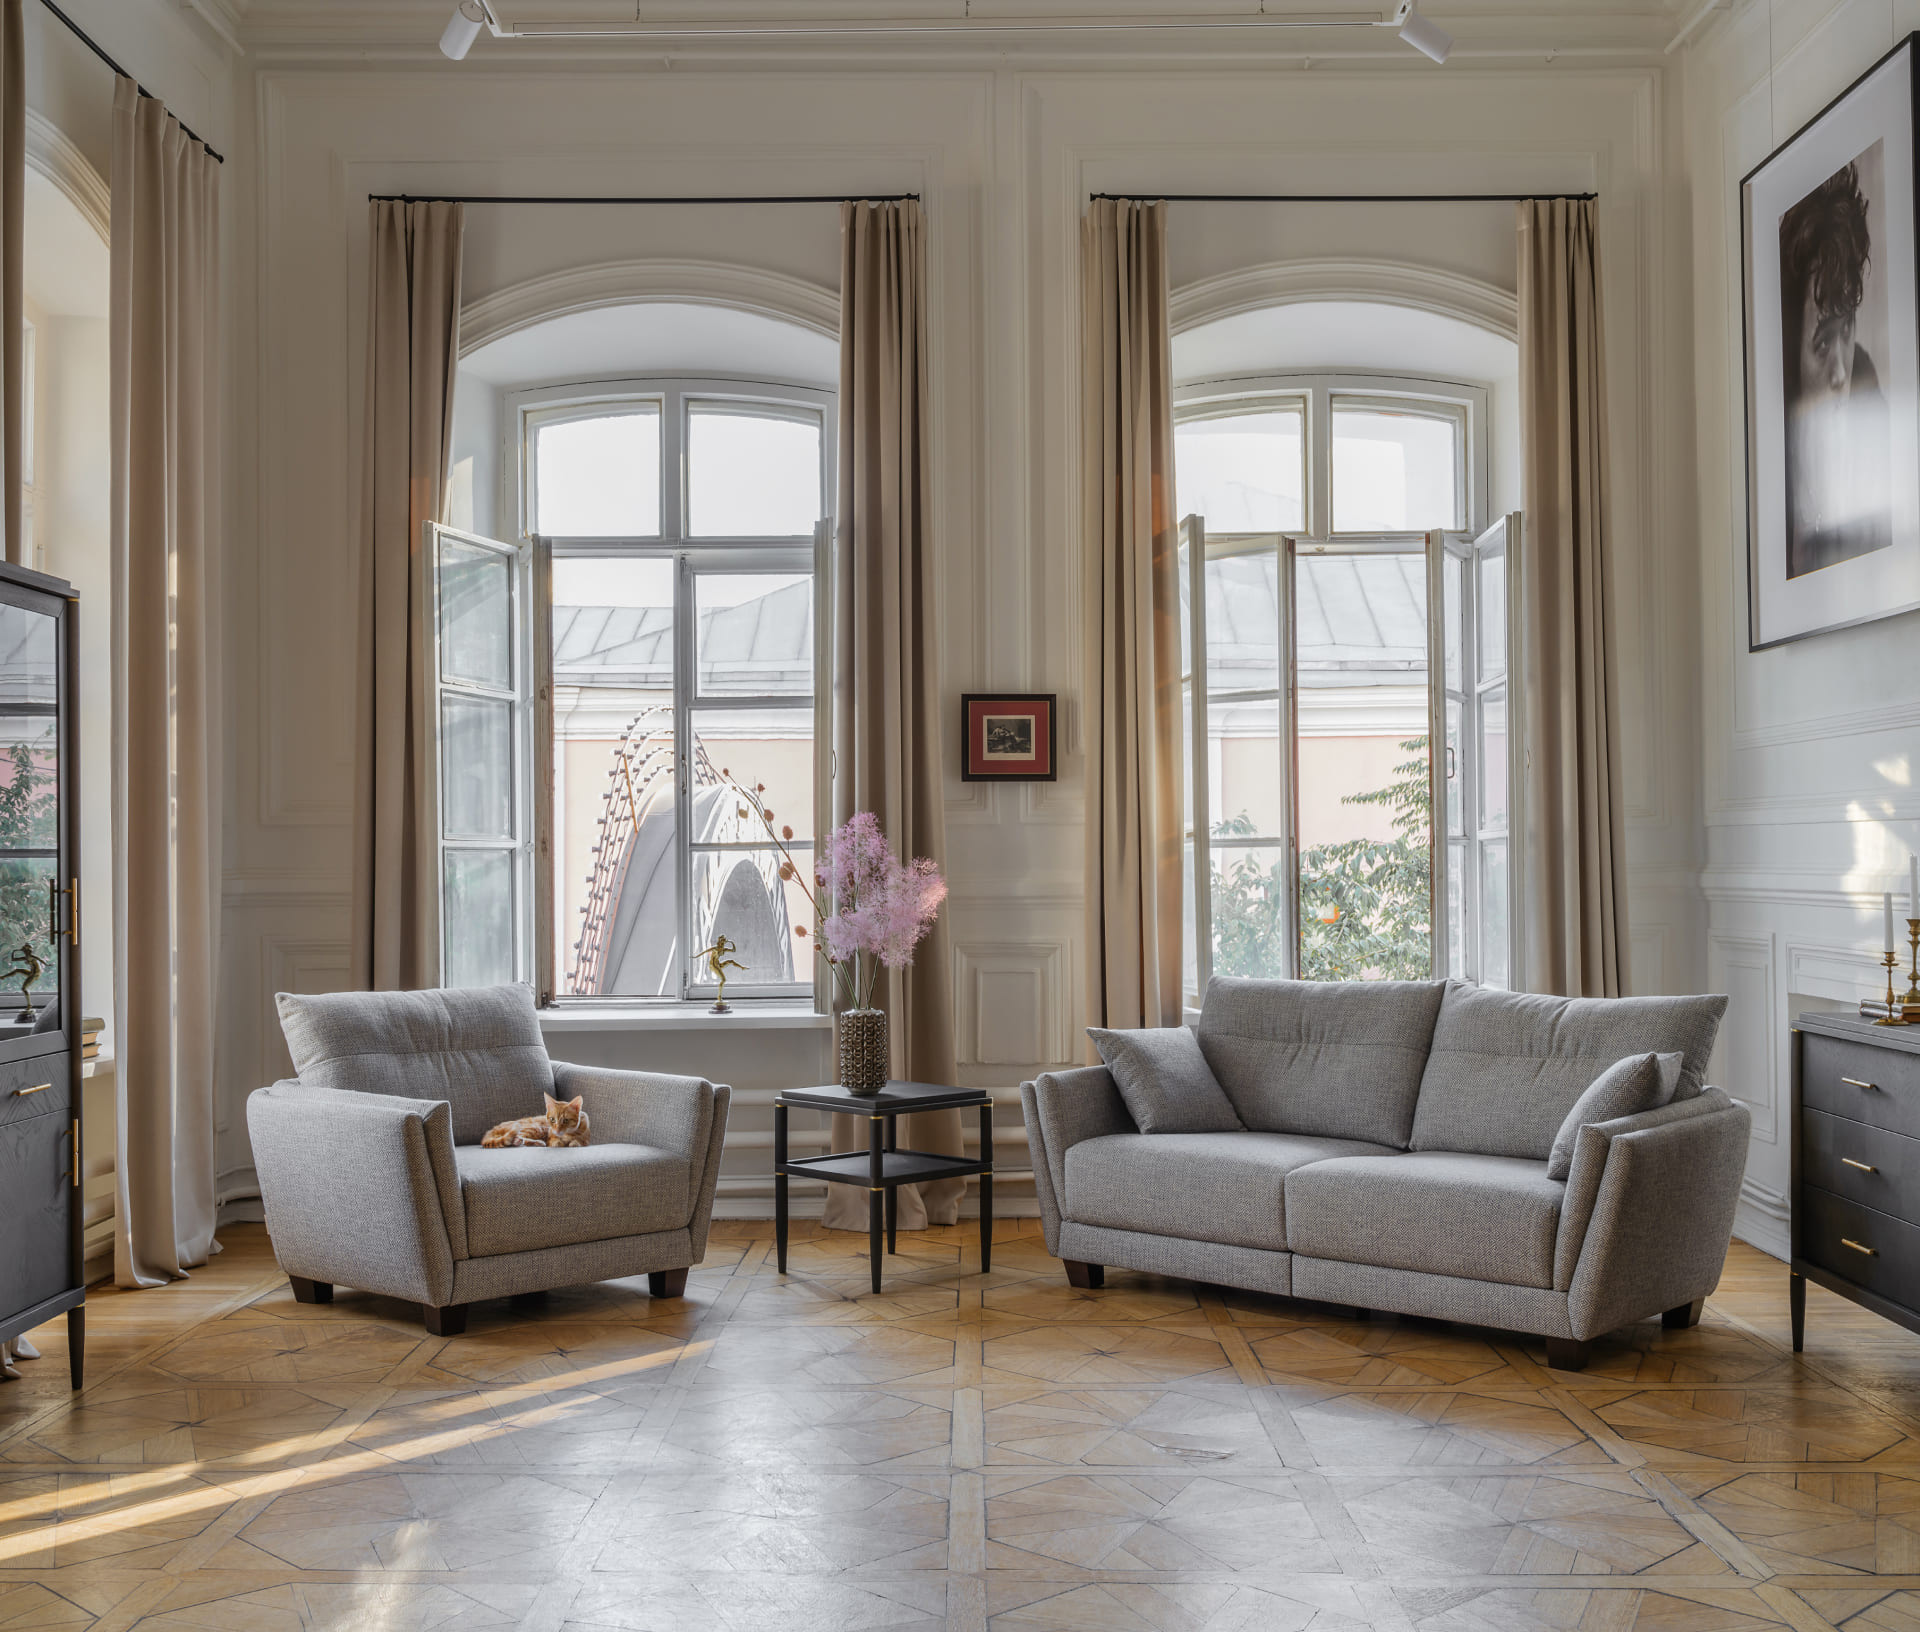 Элитный дизайн интерьера — как обустроить квартиру в стиле гламур?